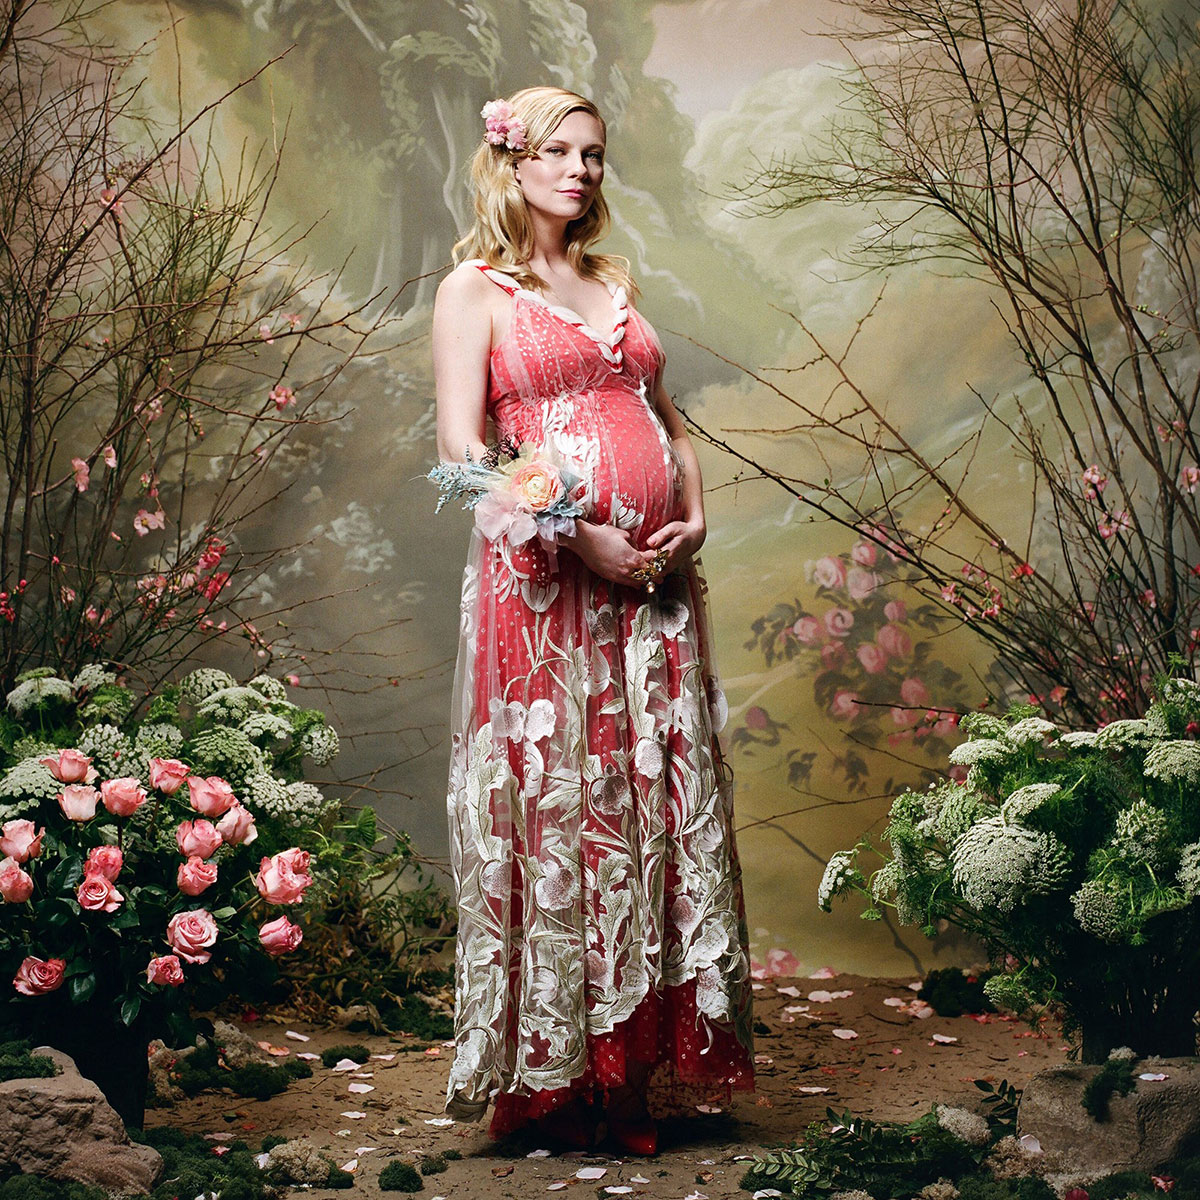 Trong khi đó, Kirsten Dunst lại đằm thắm diện trang phục couture cổ điển, biến cô thành một nữ thần trong tranh sơn dầu